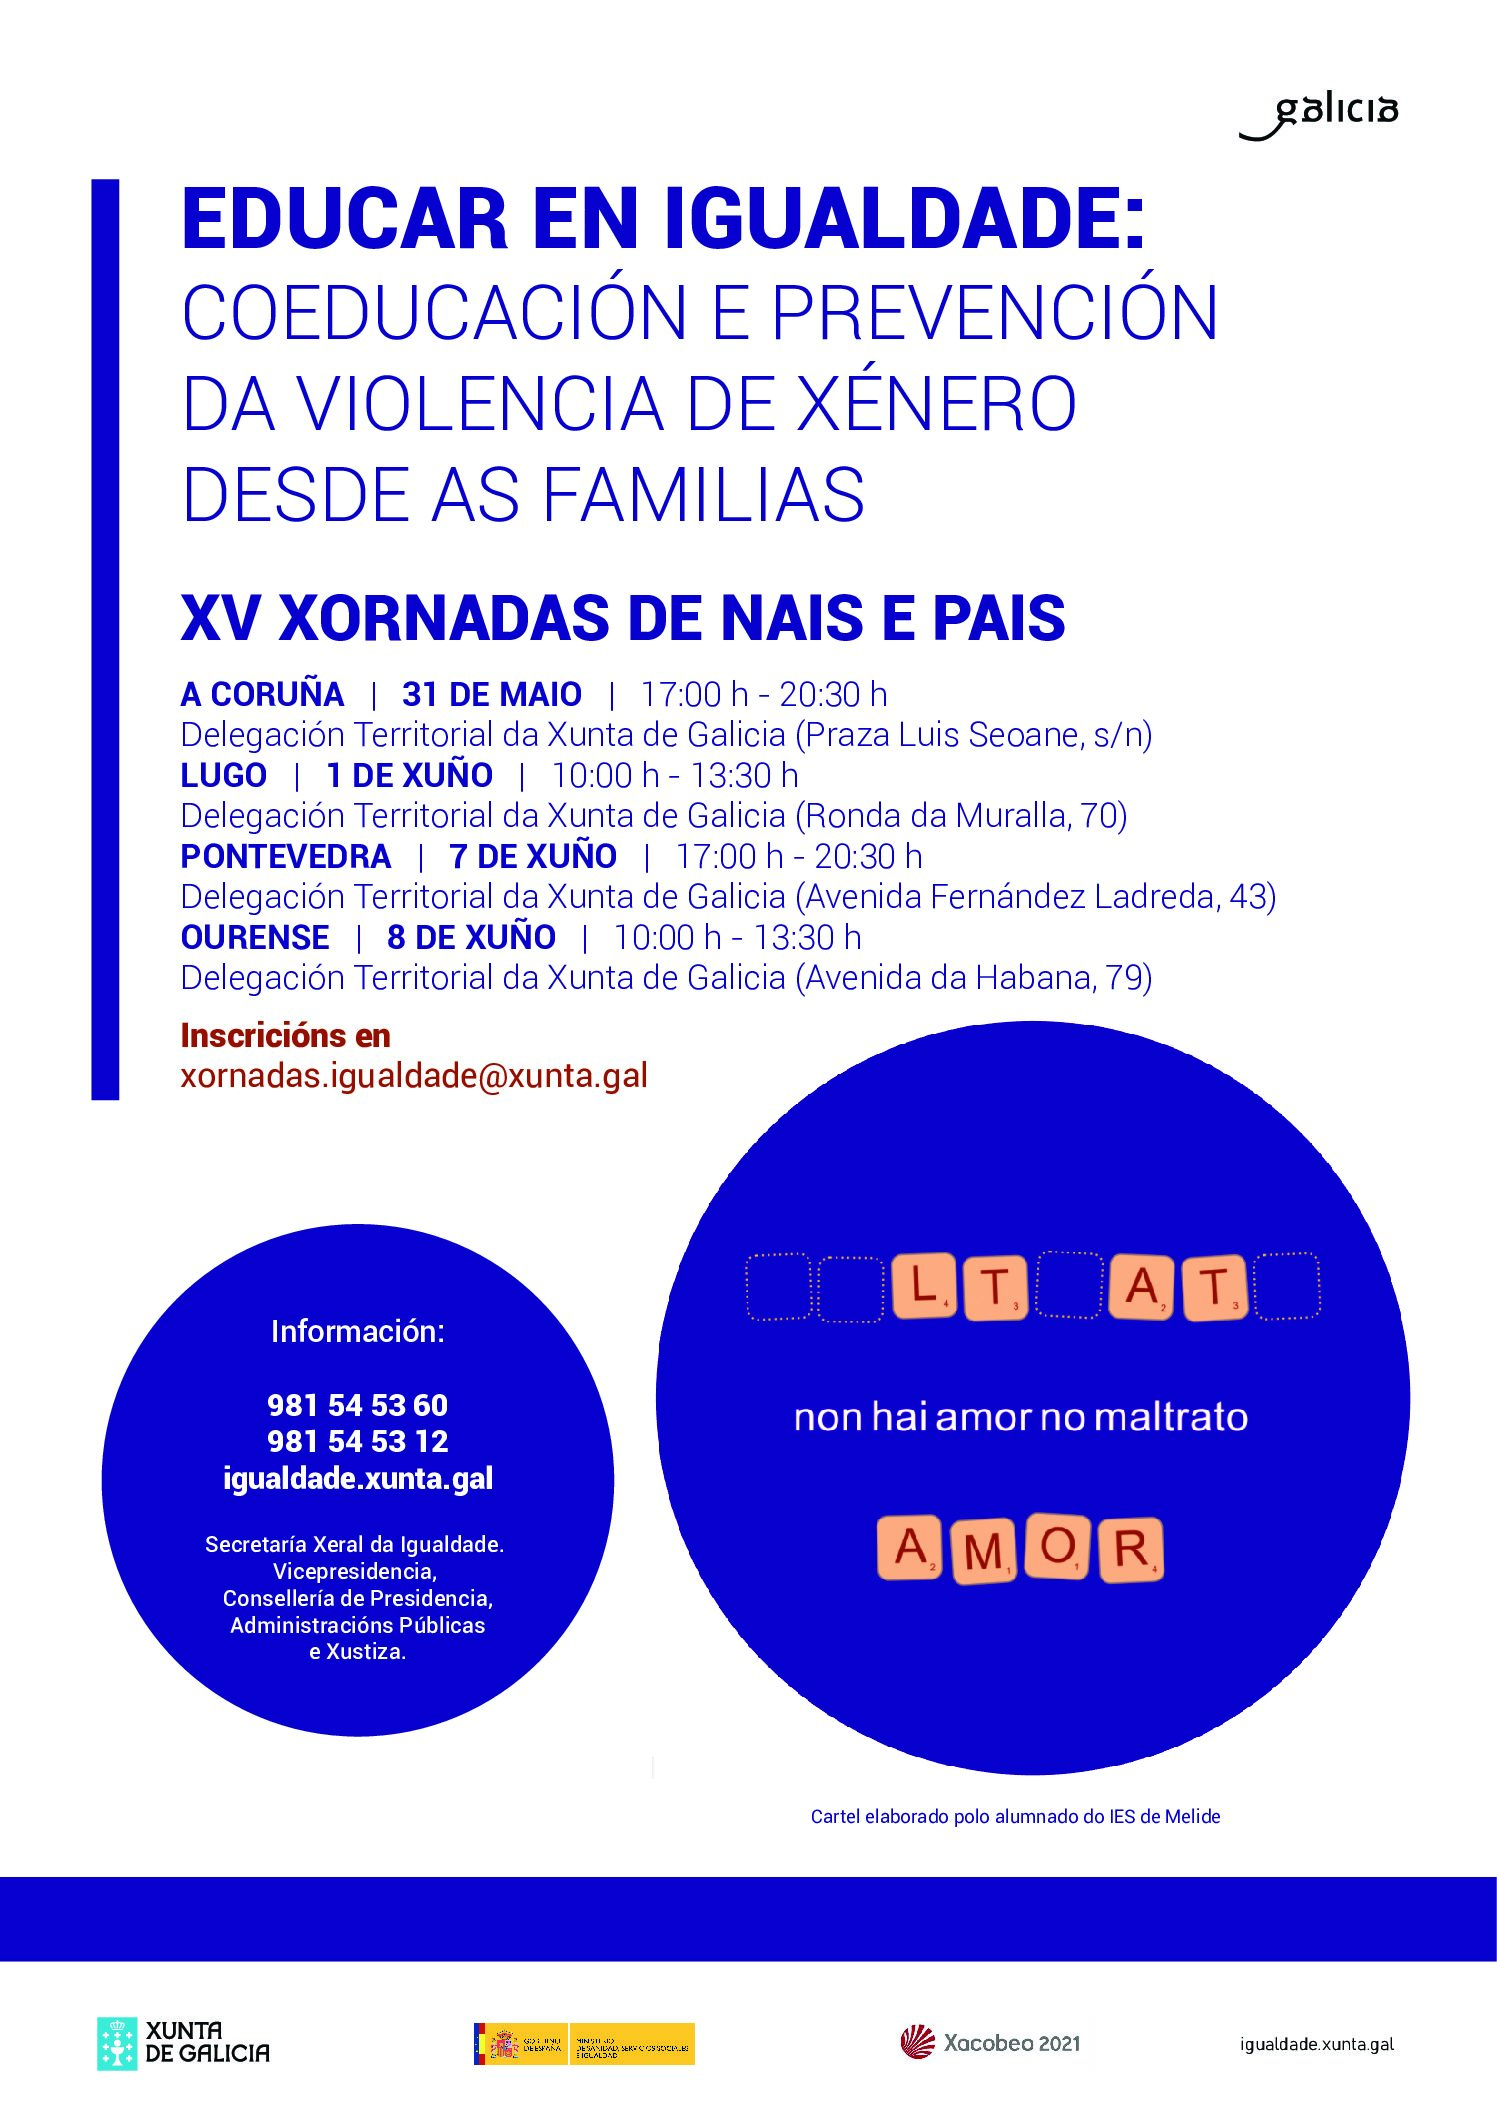 XV XORNADAS DE NAIS E PAIS, EDUCAR EN IGUALDADE: COEDUCACIÓN E PREVENCIÓN DA VIOLENCIA DE XÉNERO DESDE AS FAMILIAS